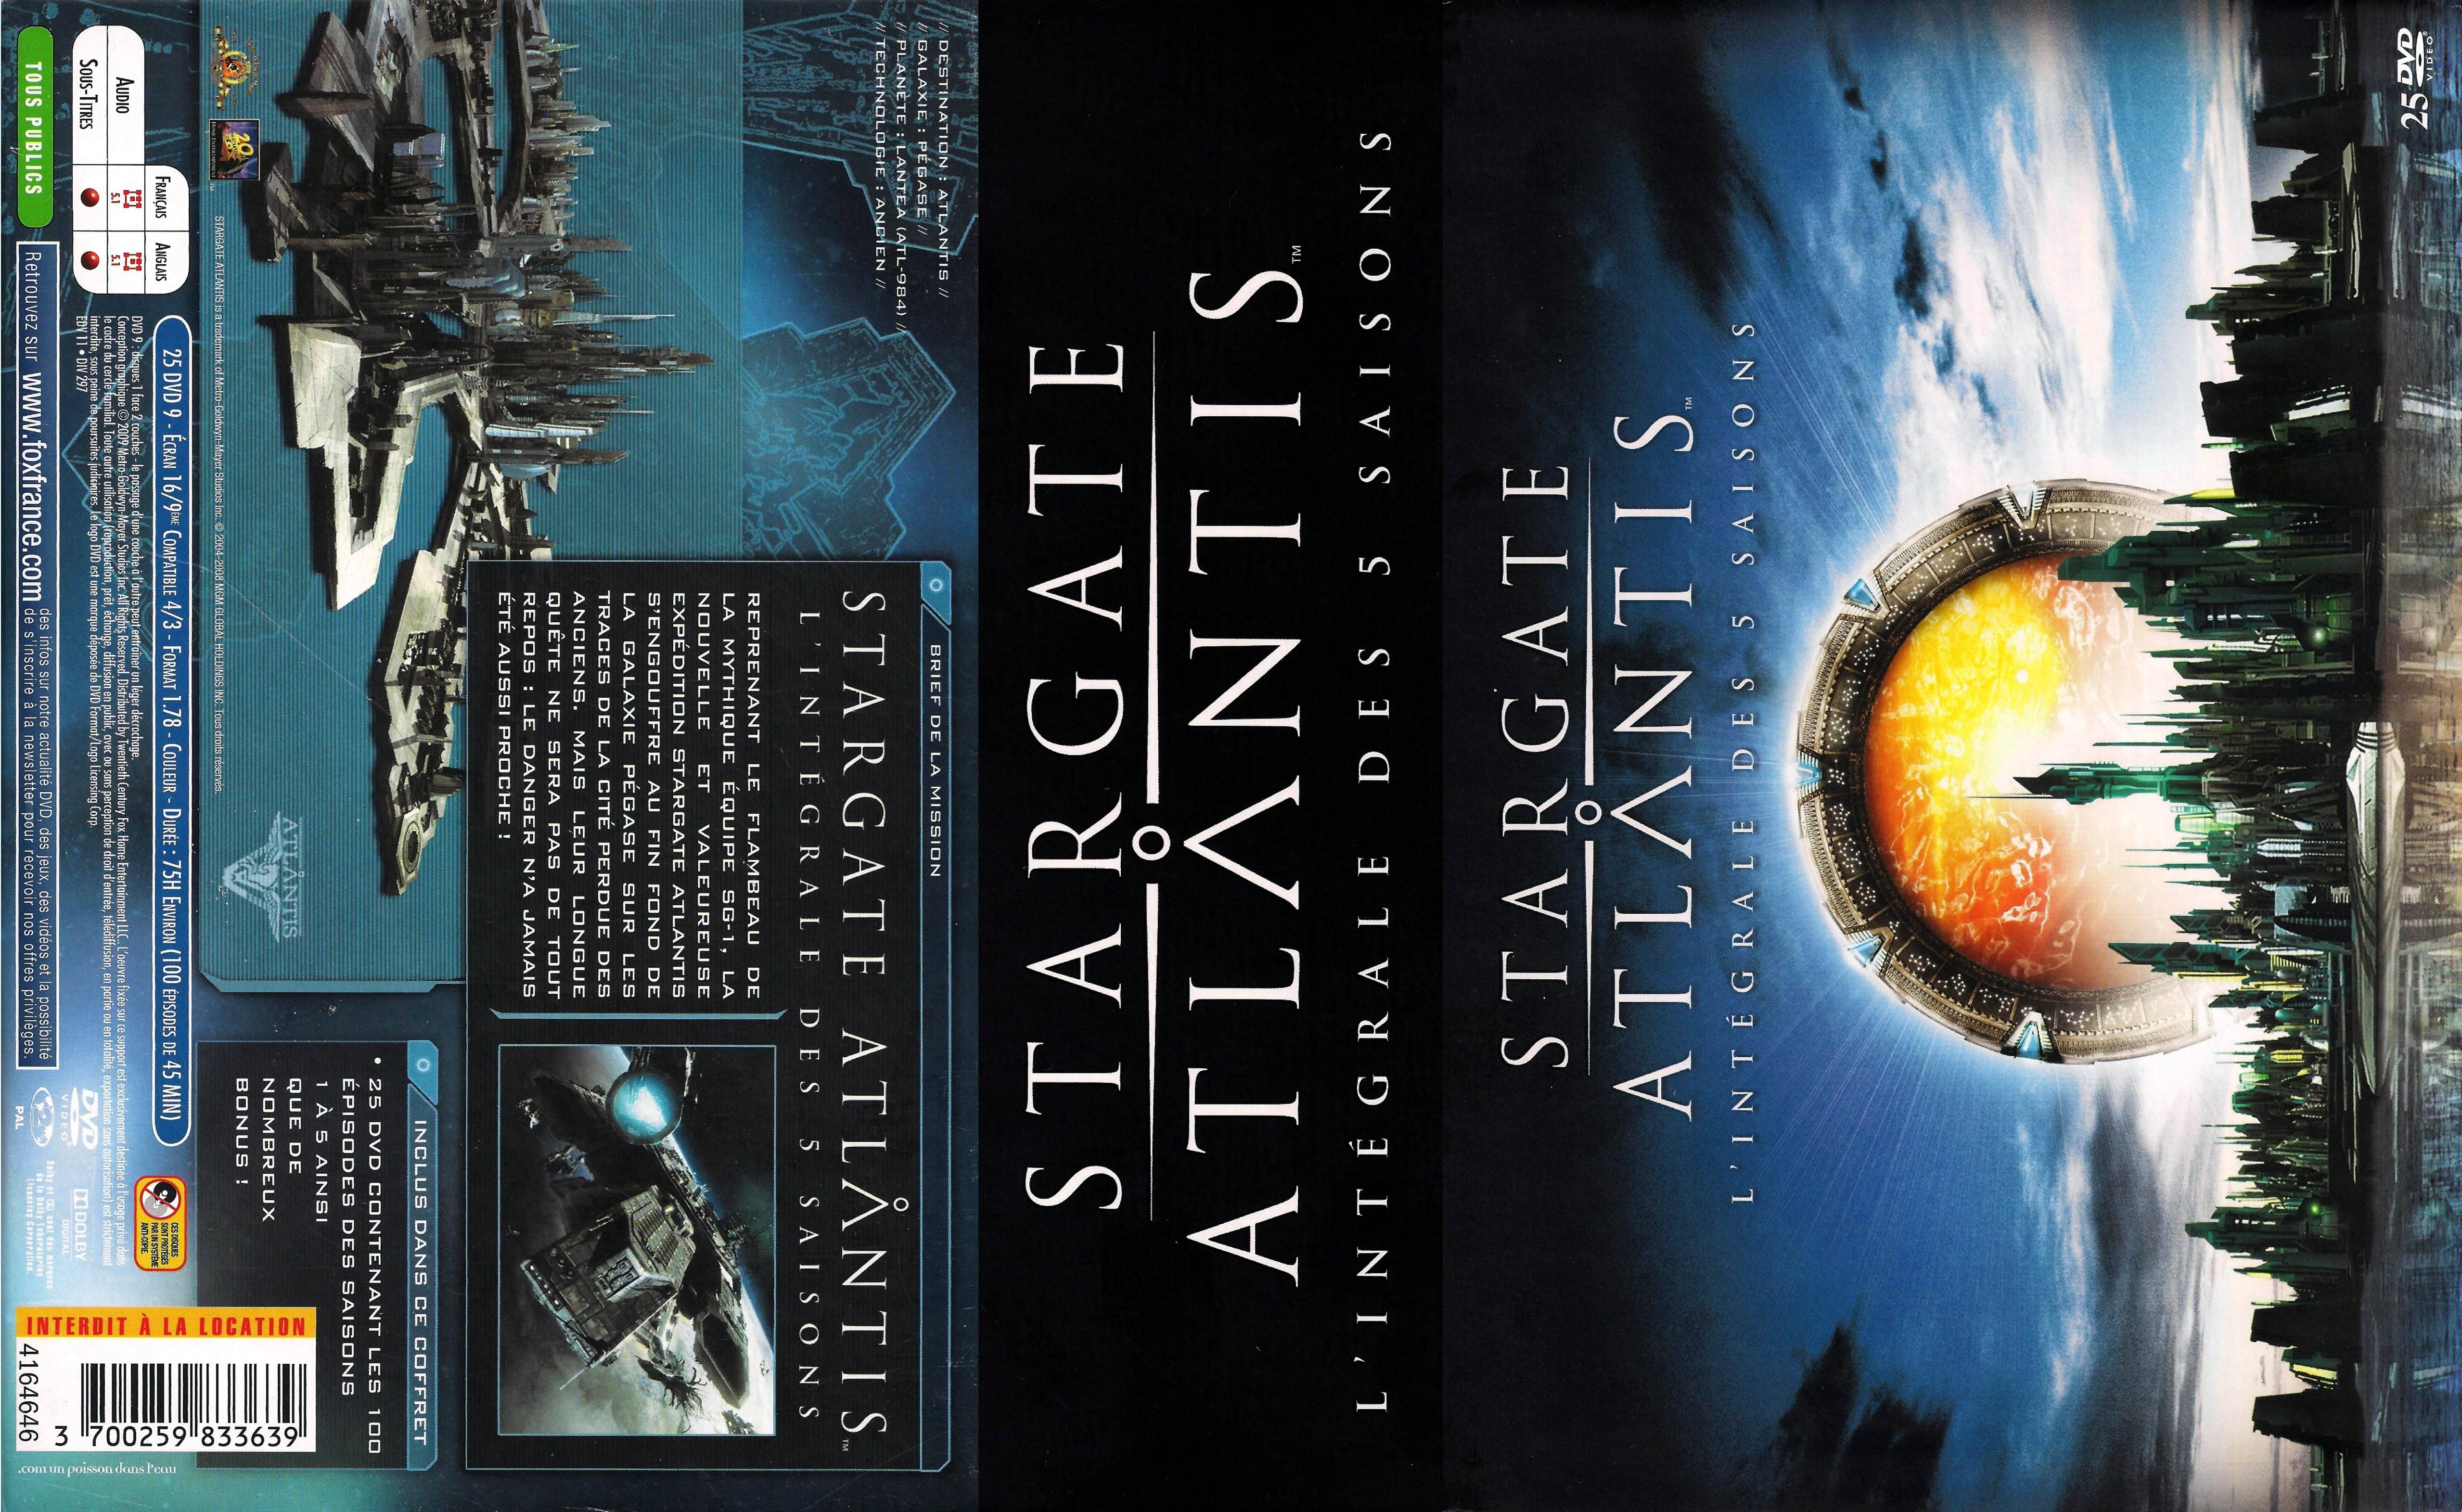 Jaquette DVD Stargate Atlantis Integrale COFFRET